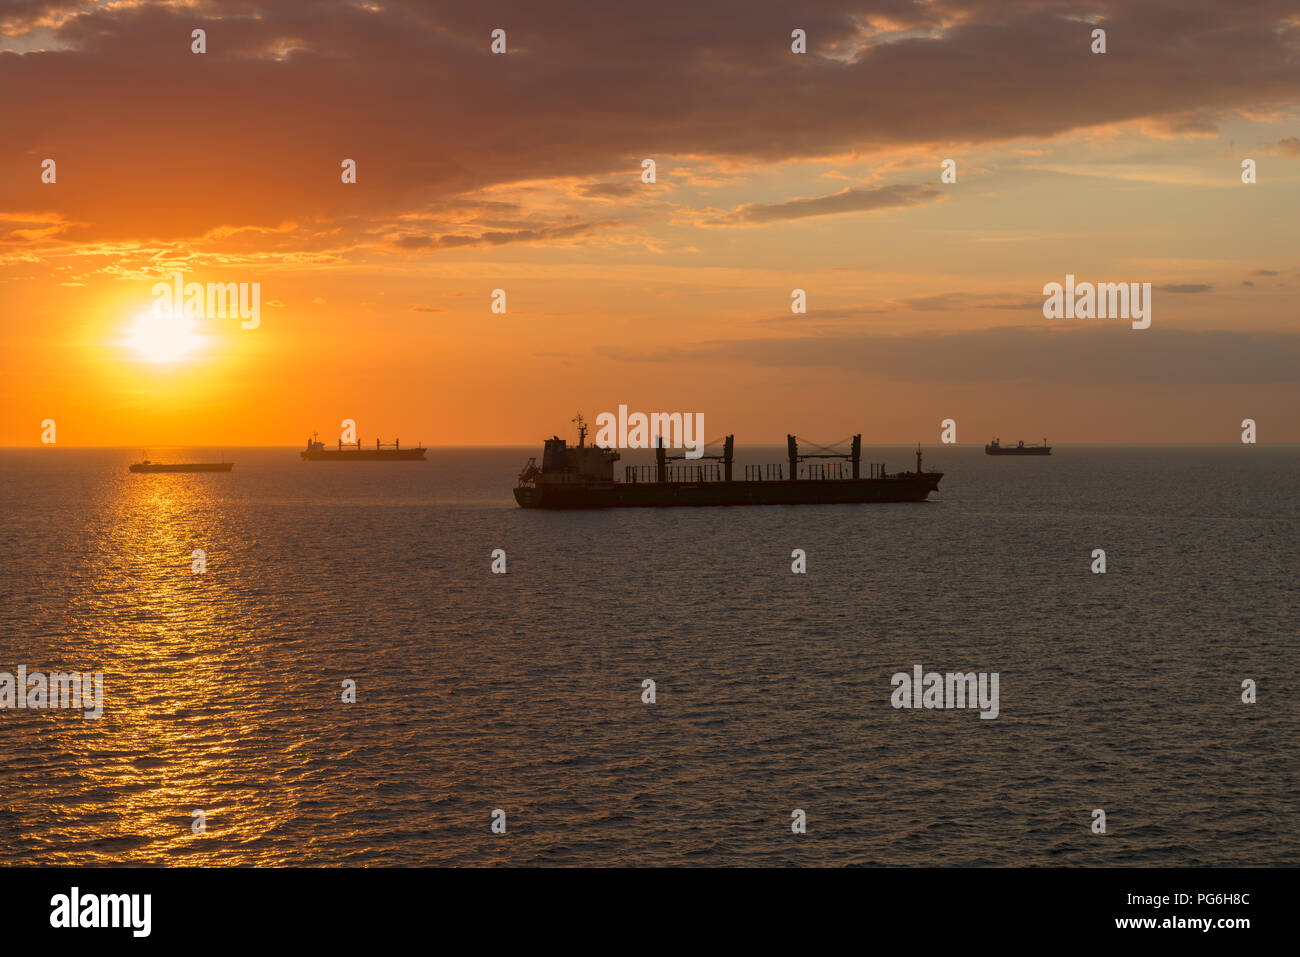 Ocean lane, navi cargo, coloful tramonto e impressionante sera nuvole, Mar Baltico, della Lituania, dell'Europa orientale Foto Stock